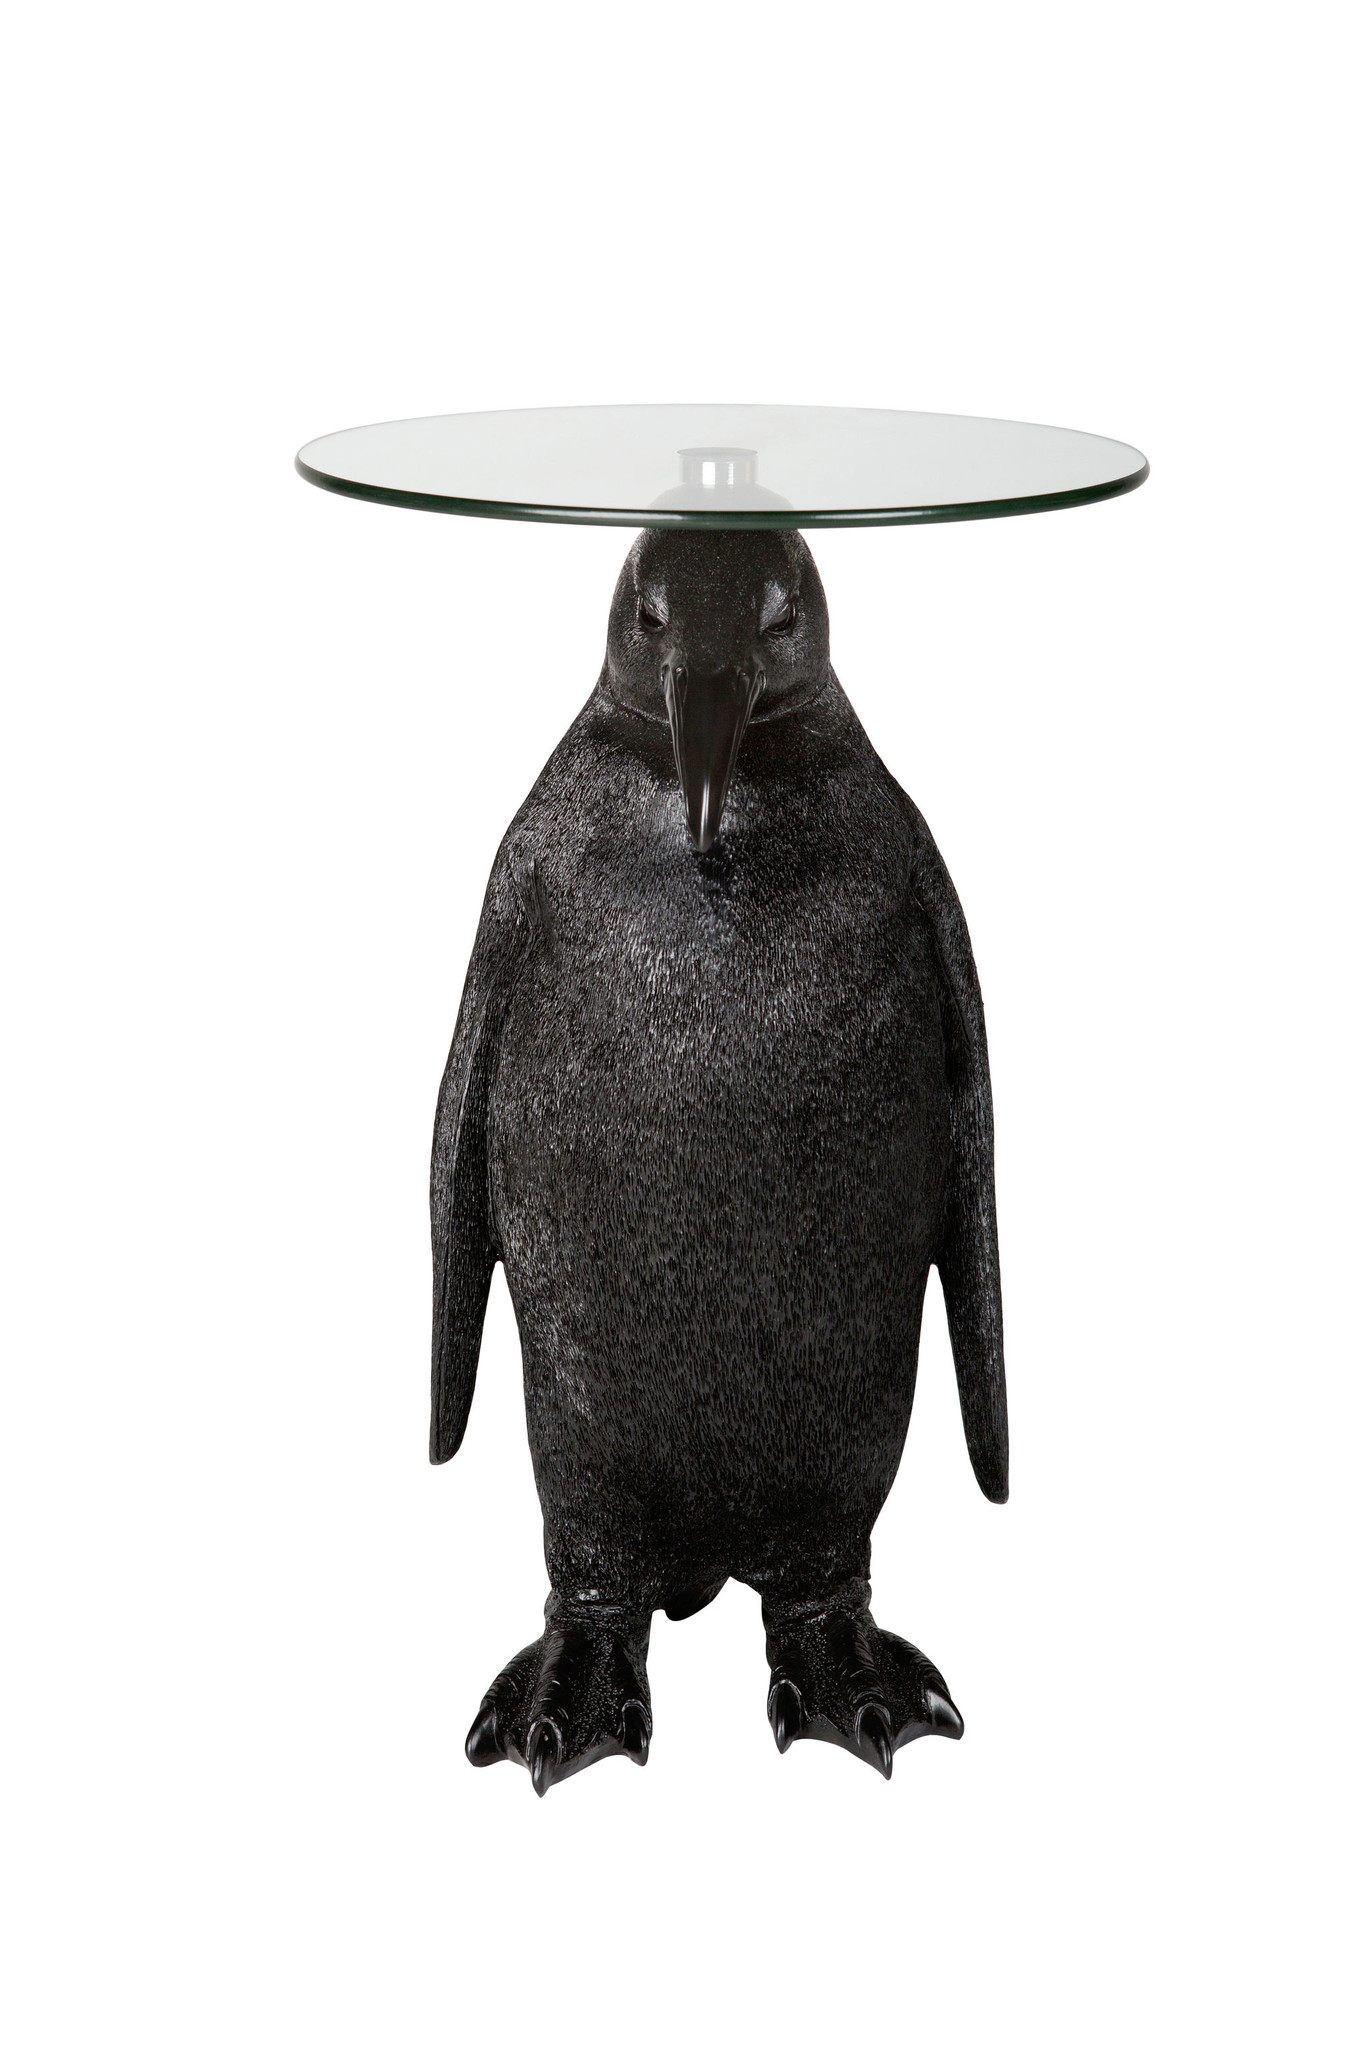 Pinguïn met tafelblad van glas, zwart van KITCHEN TREND